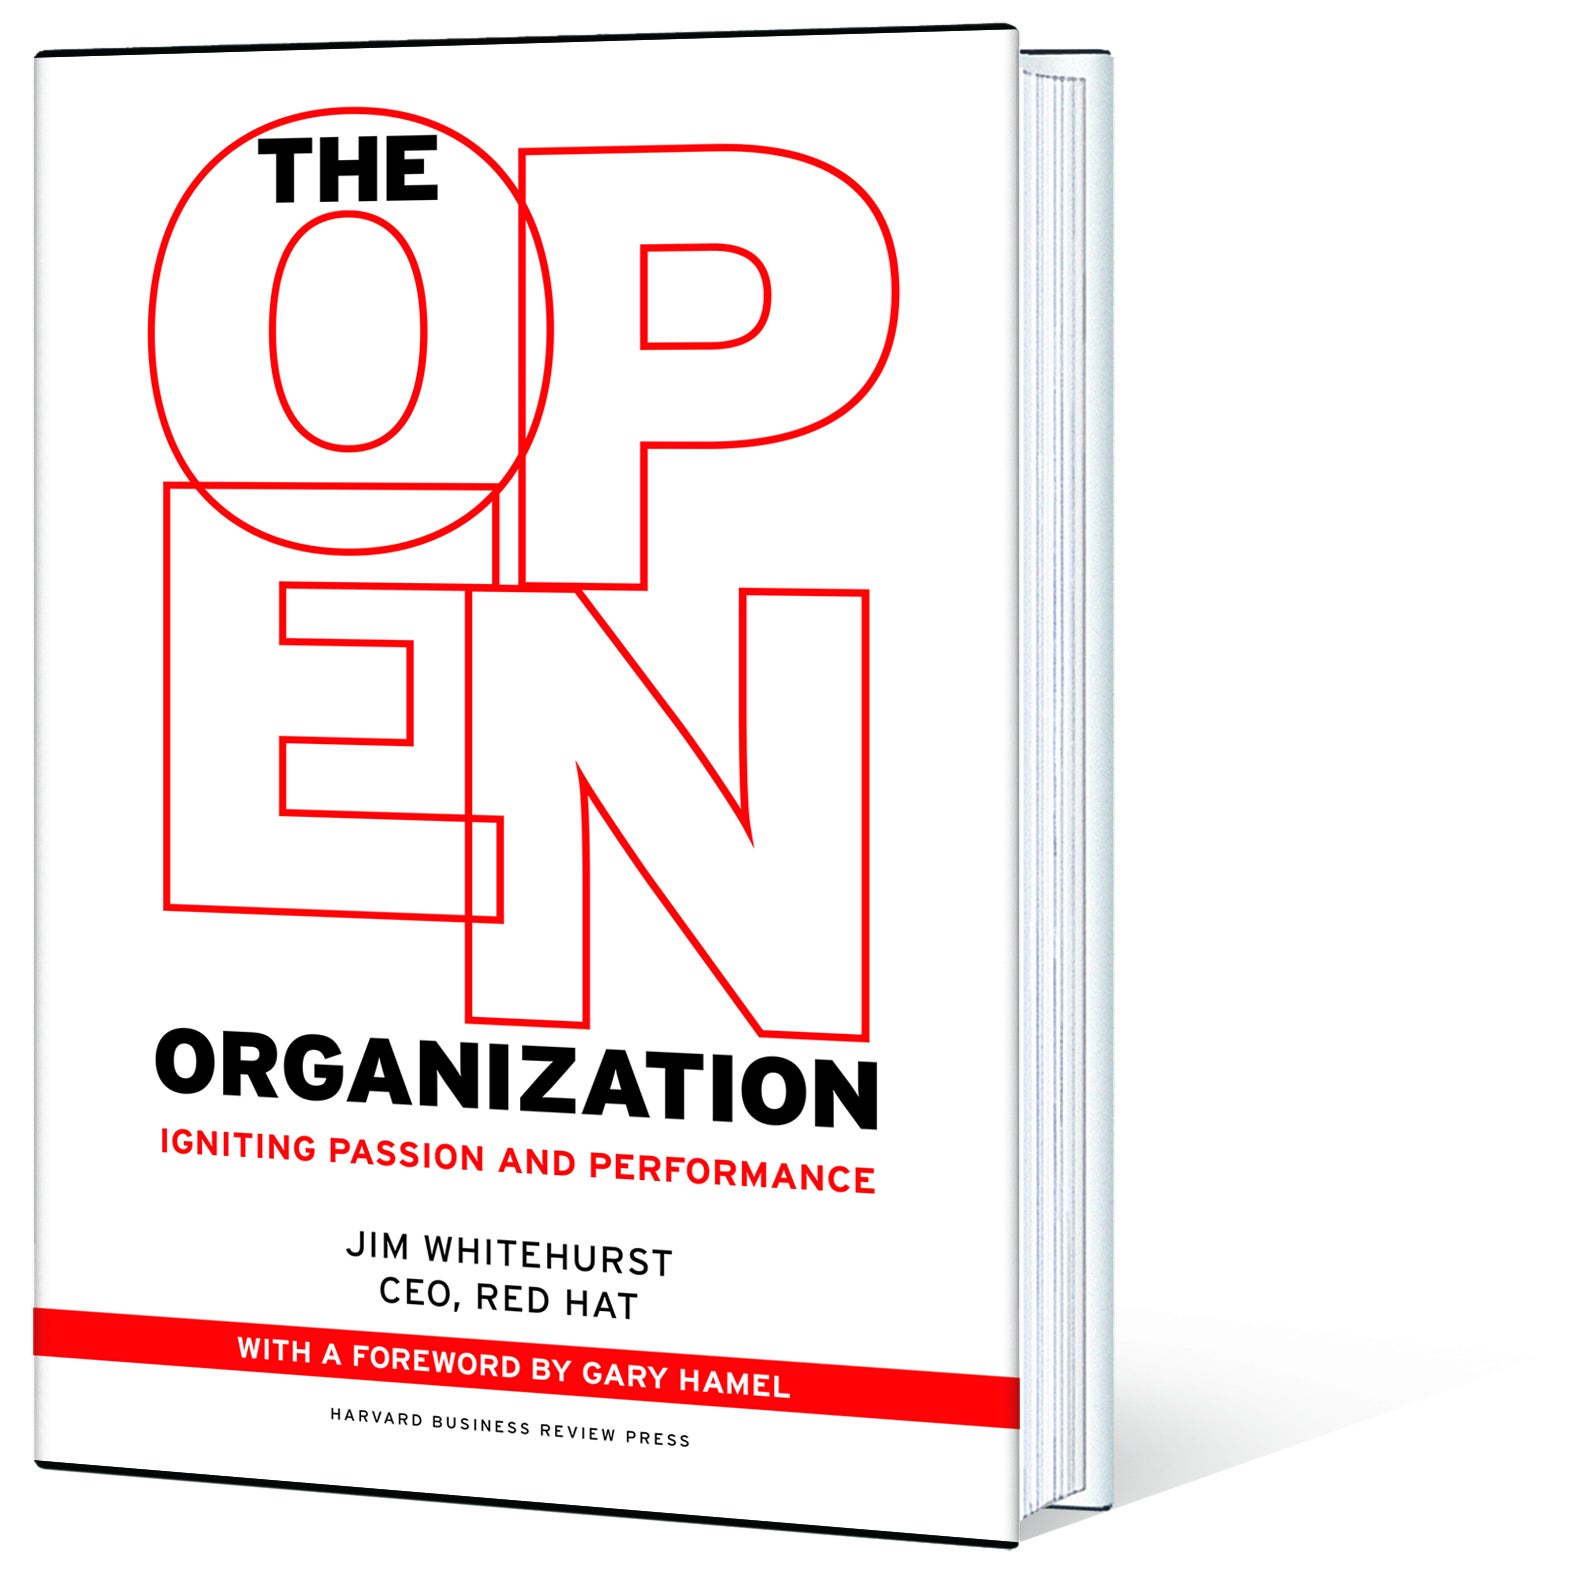 The Open Organization book cover profile